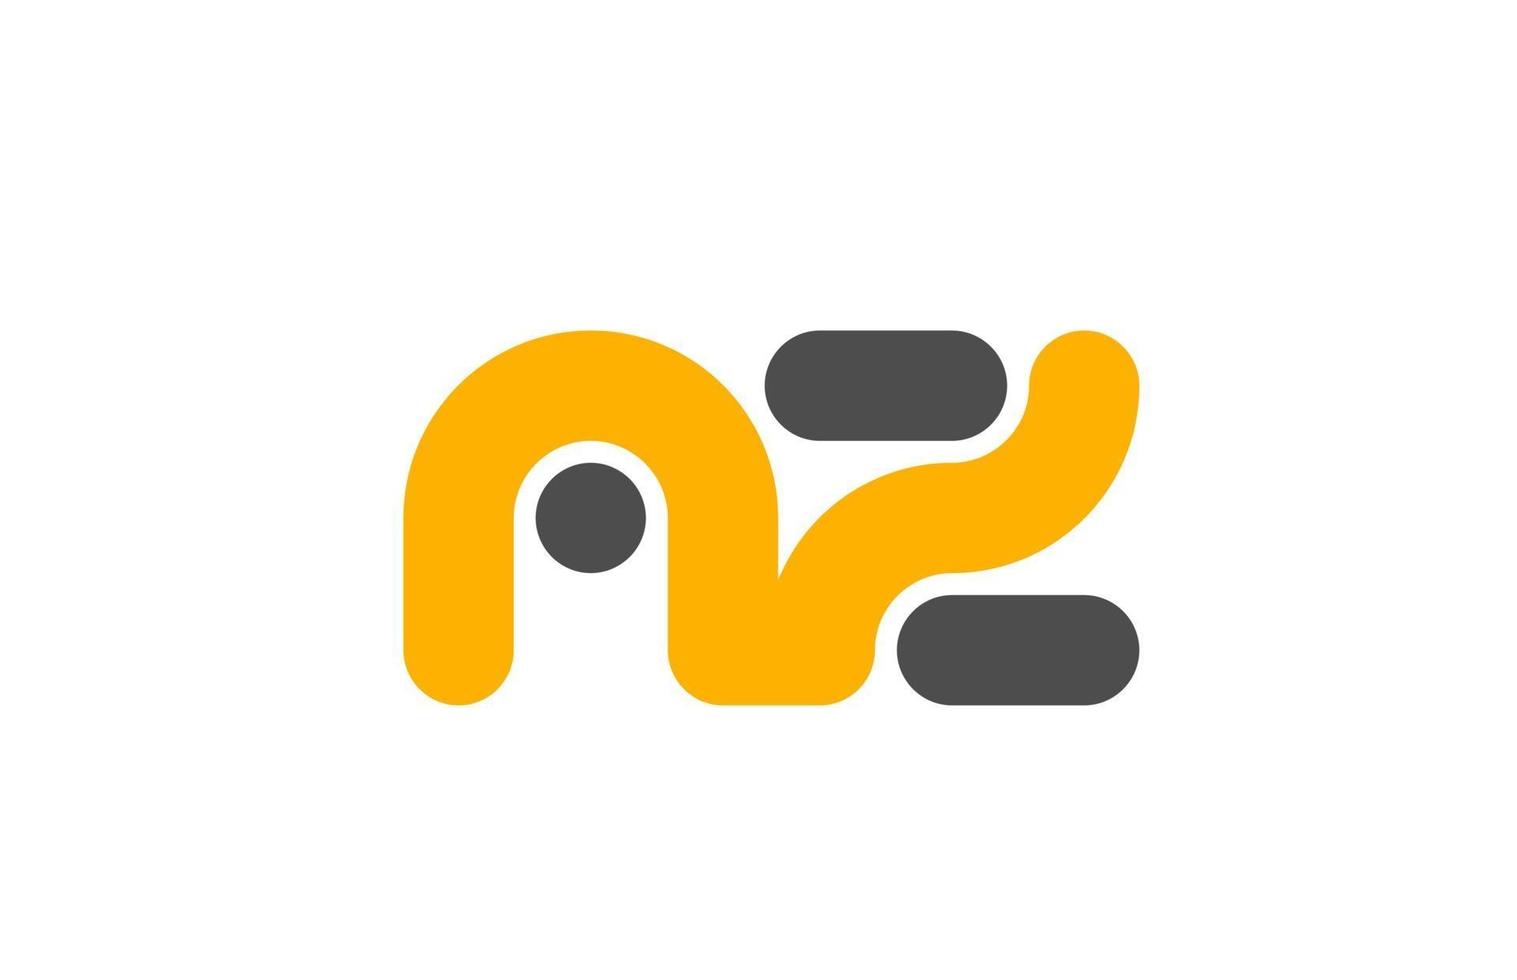 yellow grey combination logo letter AZ A Z alphabet design icon vector